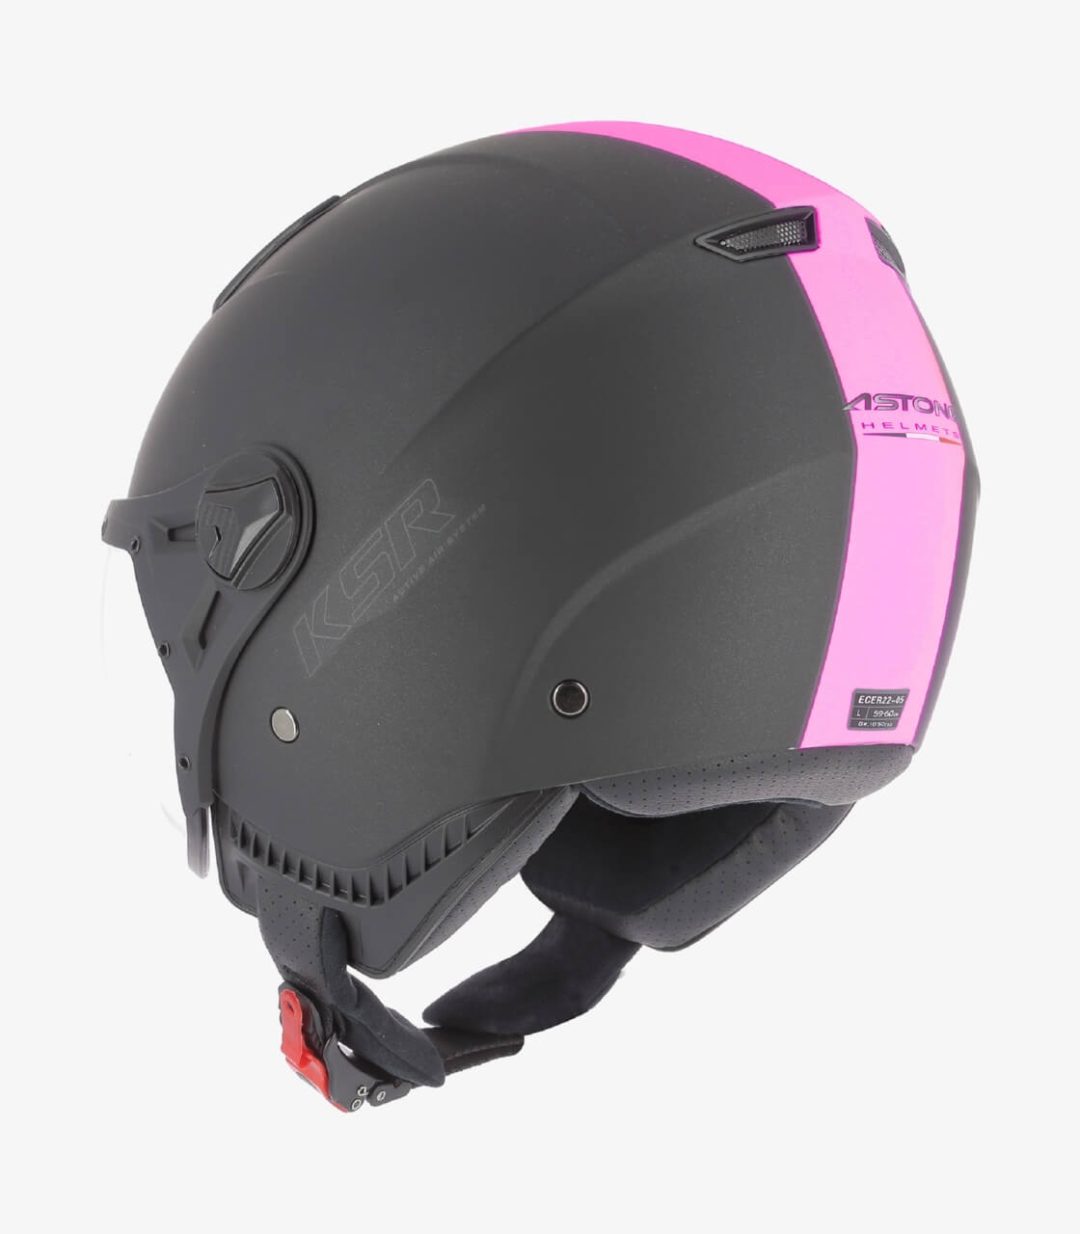 astone-ksr-2-matt-black-pink-open-face-helmet-ksr2g-mbp (6)